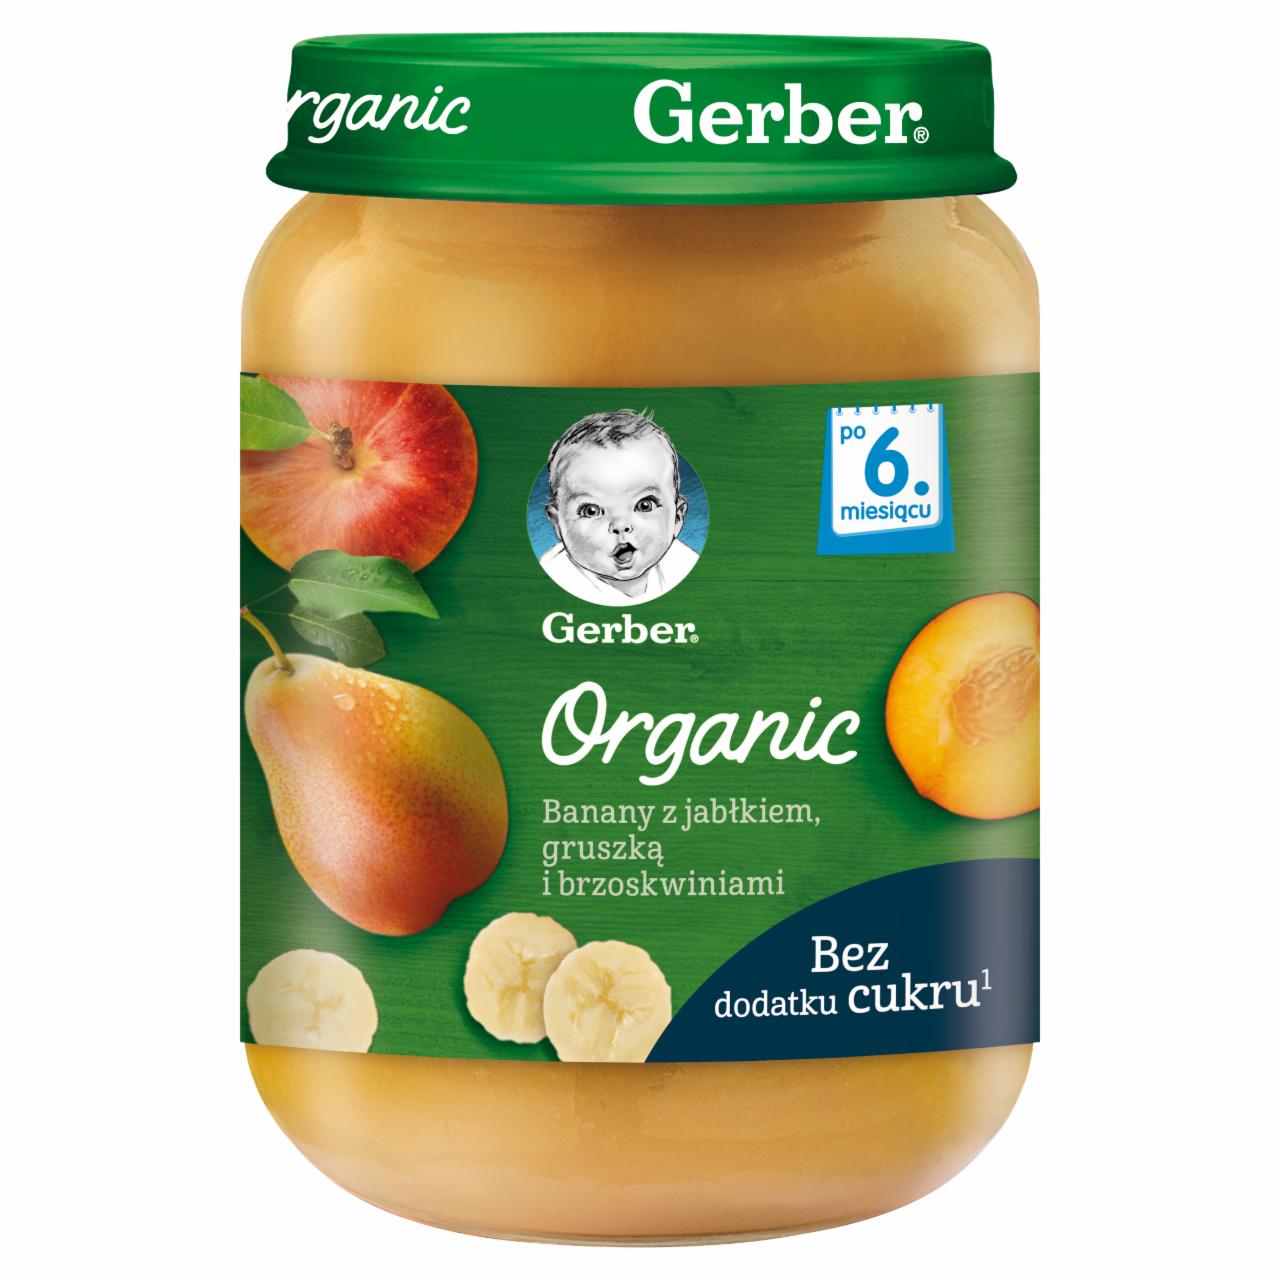 Zdjęcia - Banany z jabłkiem gruszką i brzoskwiniami dla niemowląt po 6. miesiącu Gerber Organic